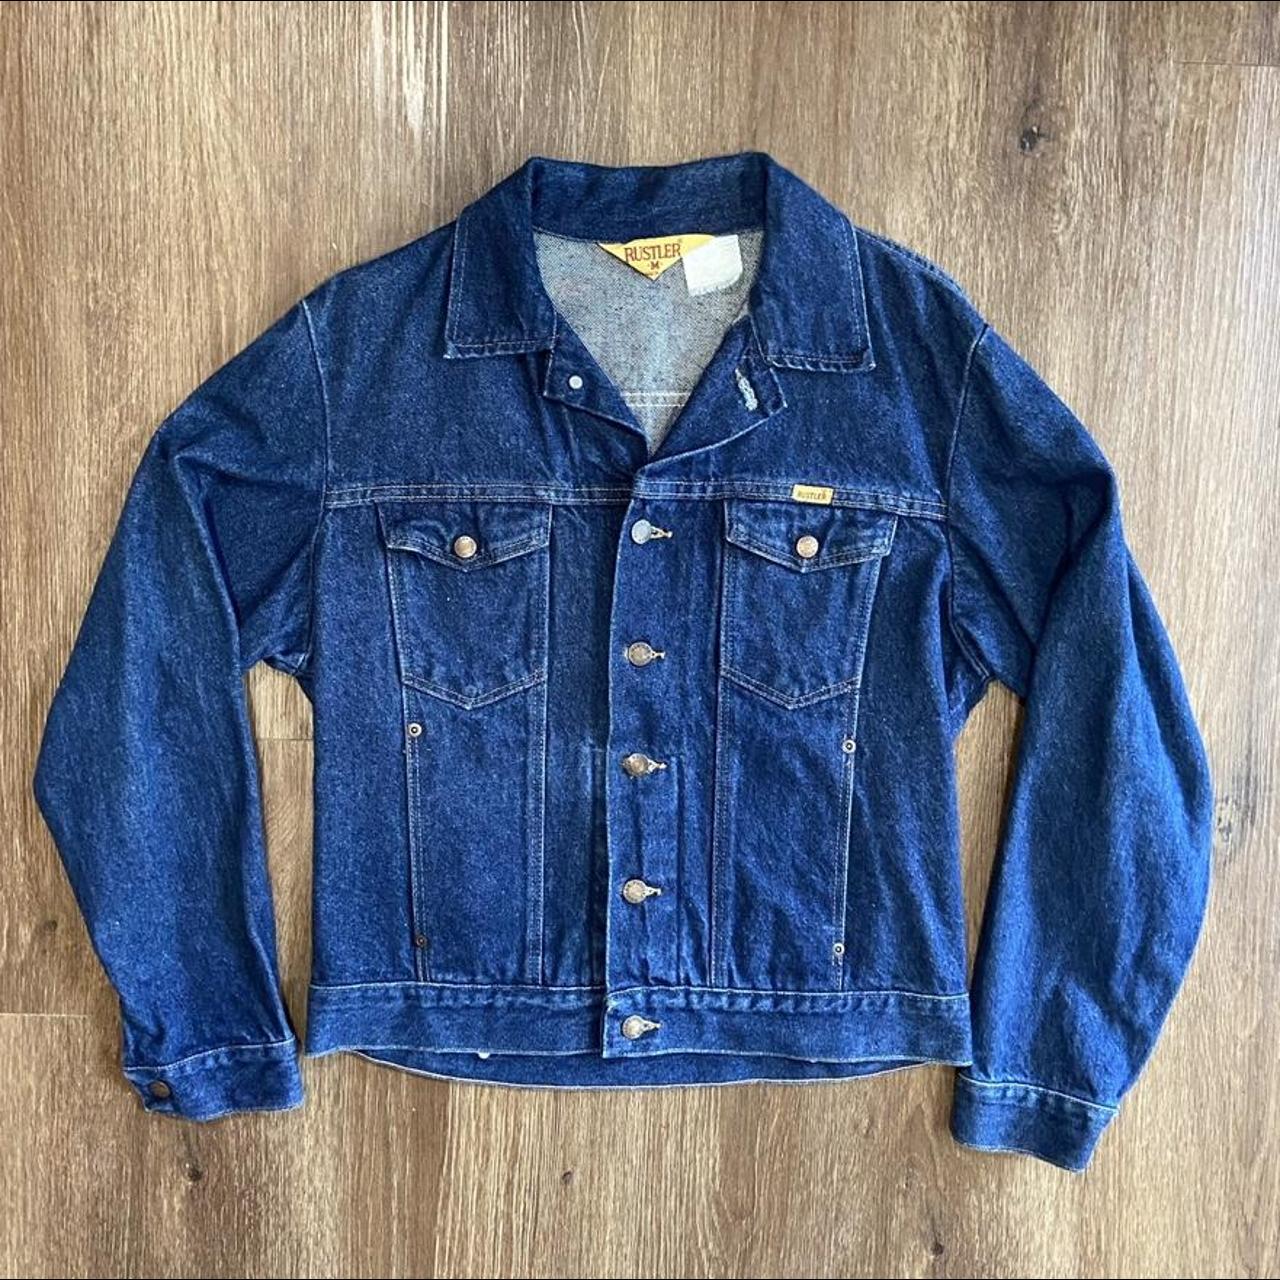 Vintage 80s rustler denim jacket Size:... - Depop